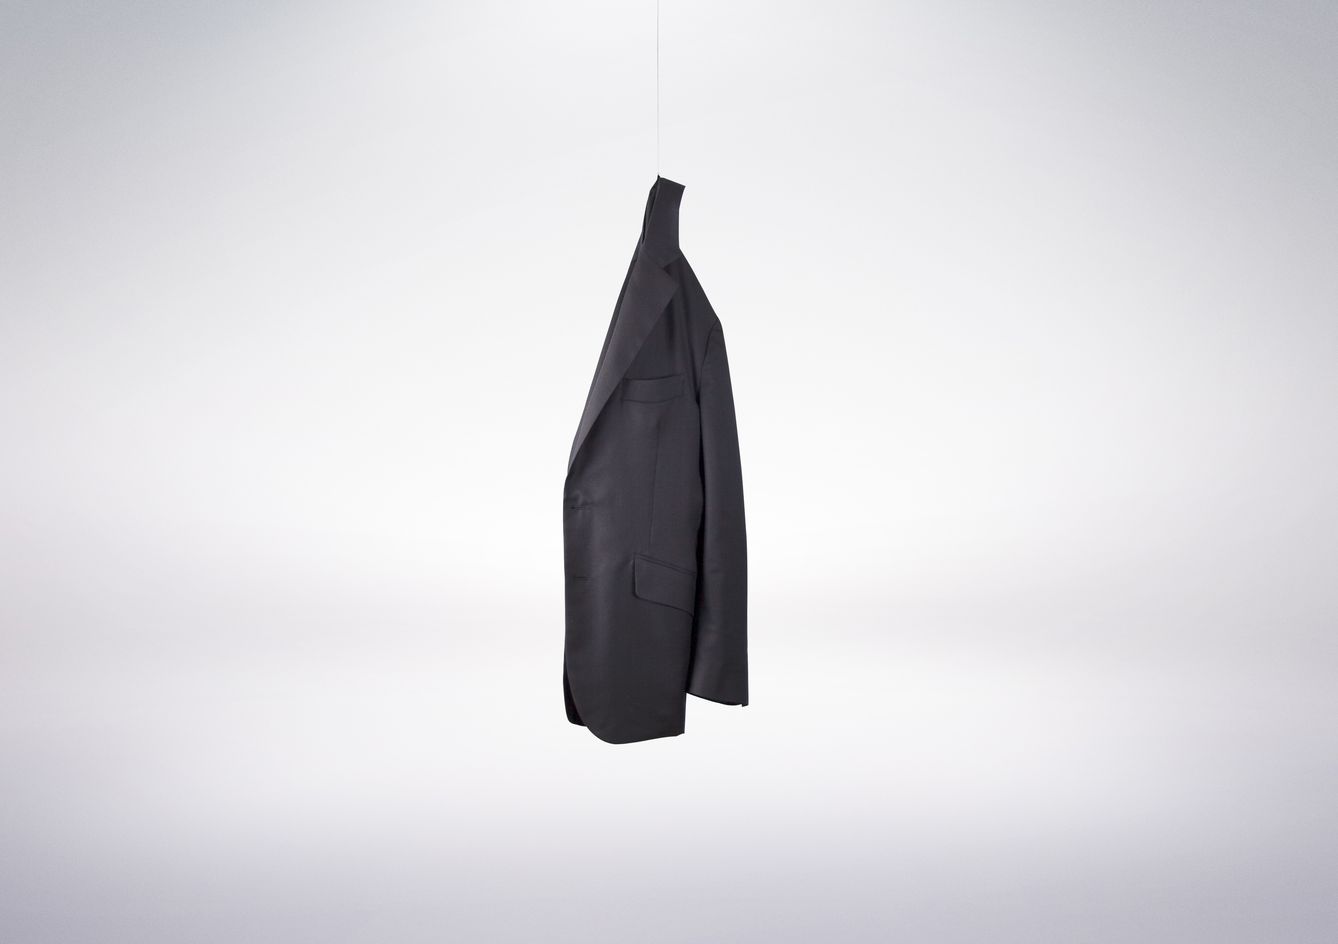 Una exclusiva chaqueta de cashmere tan ligera como un suspiro de 415 gramos